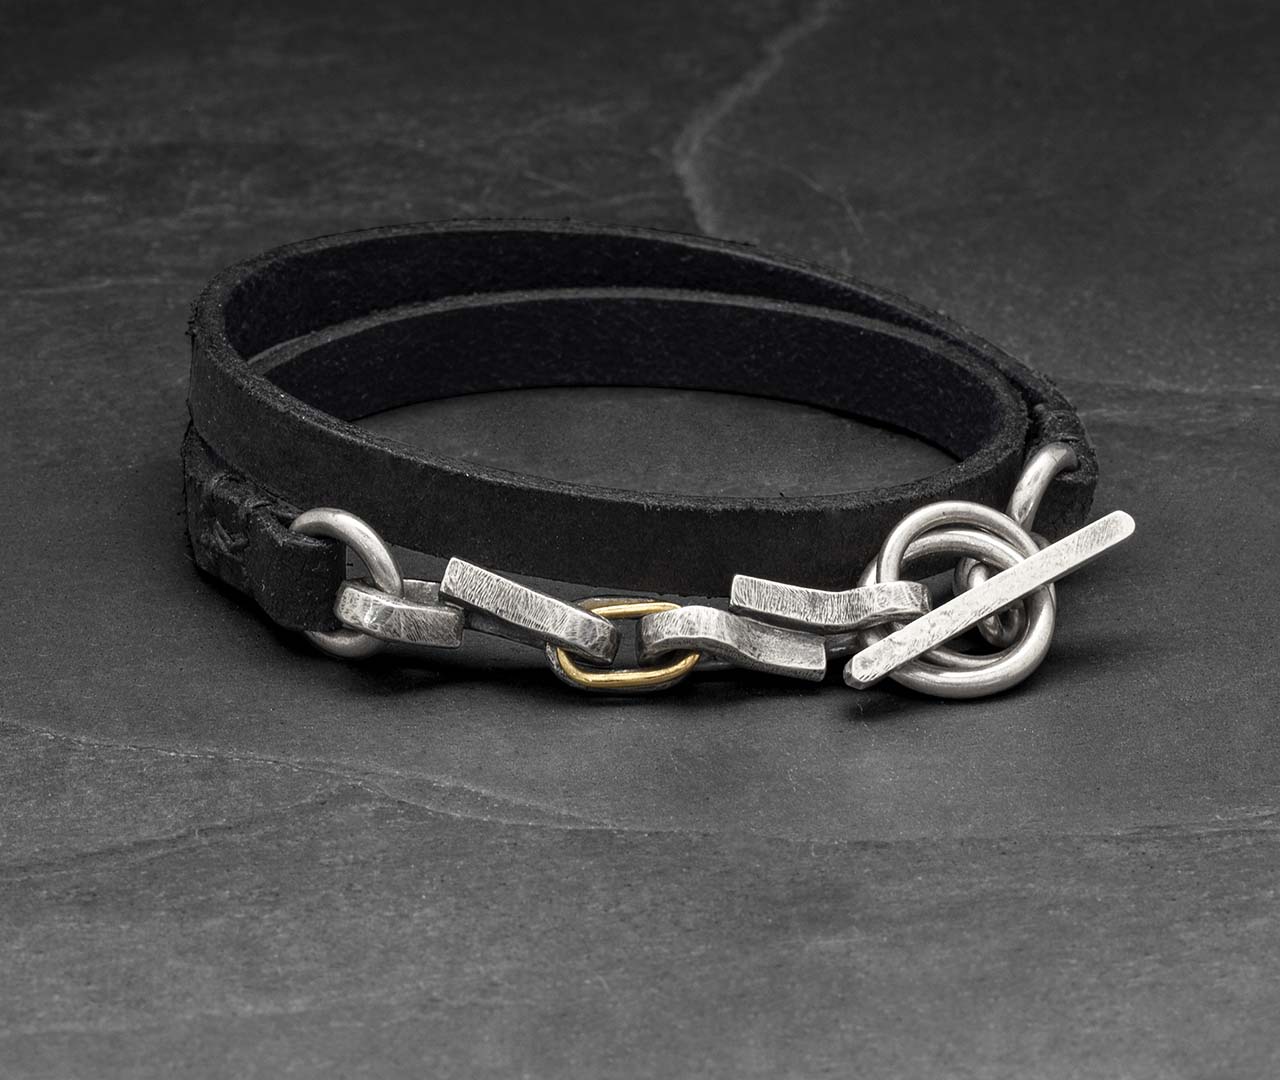 Short linked leather bracelet